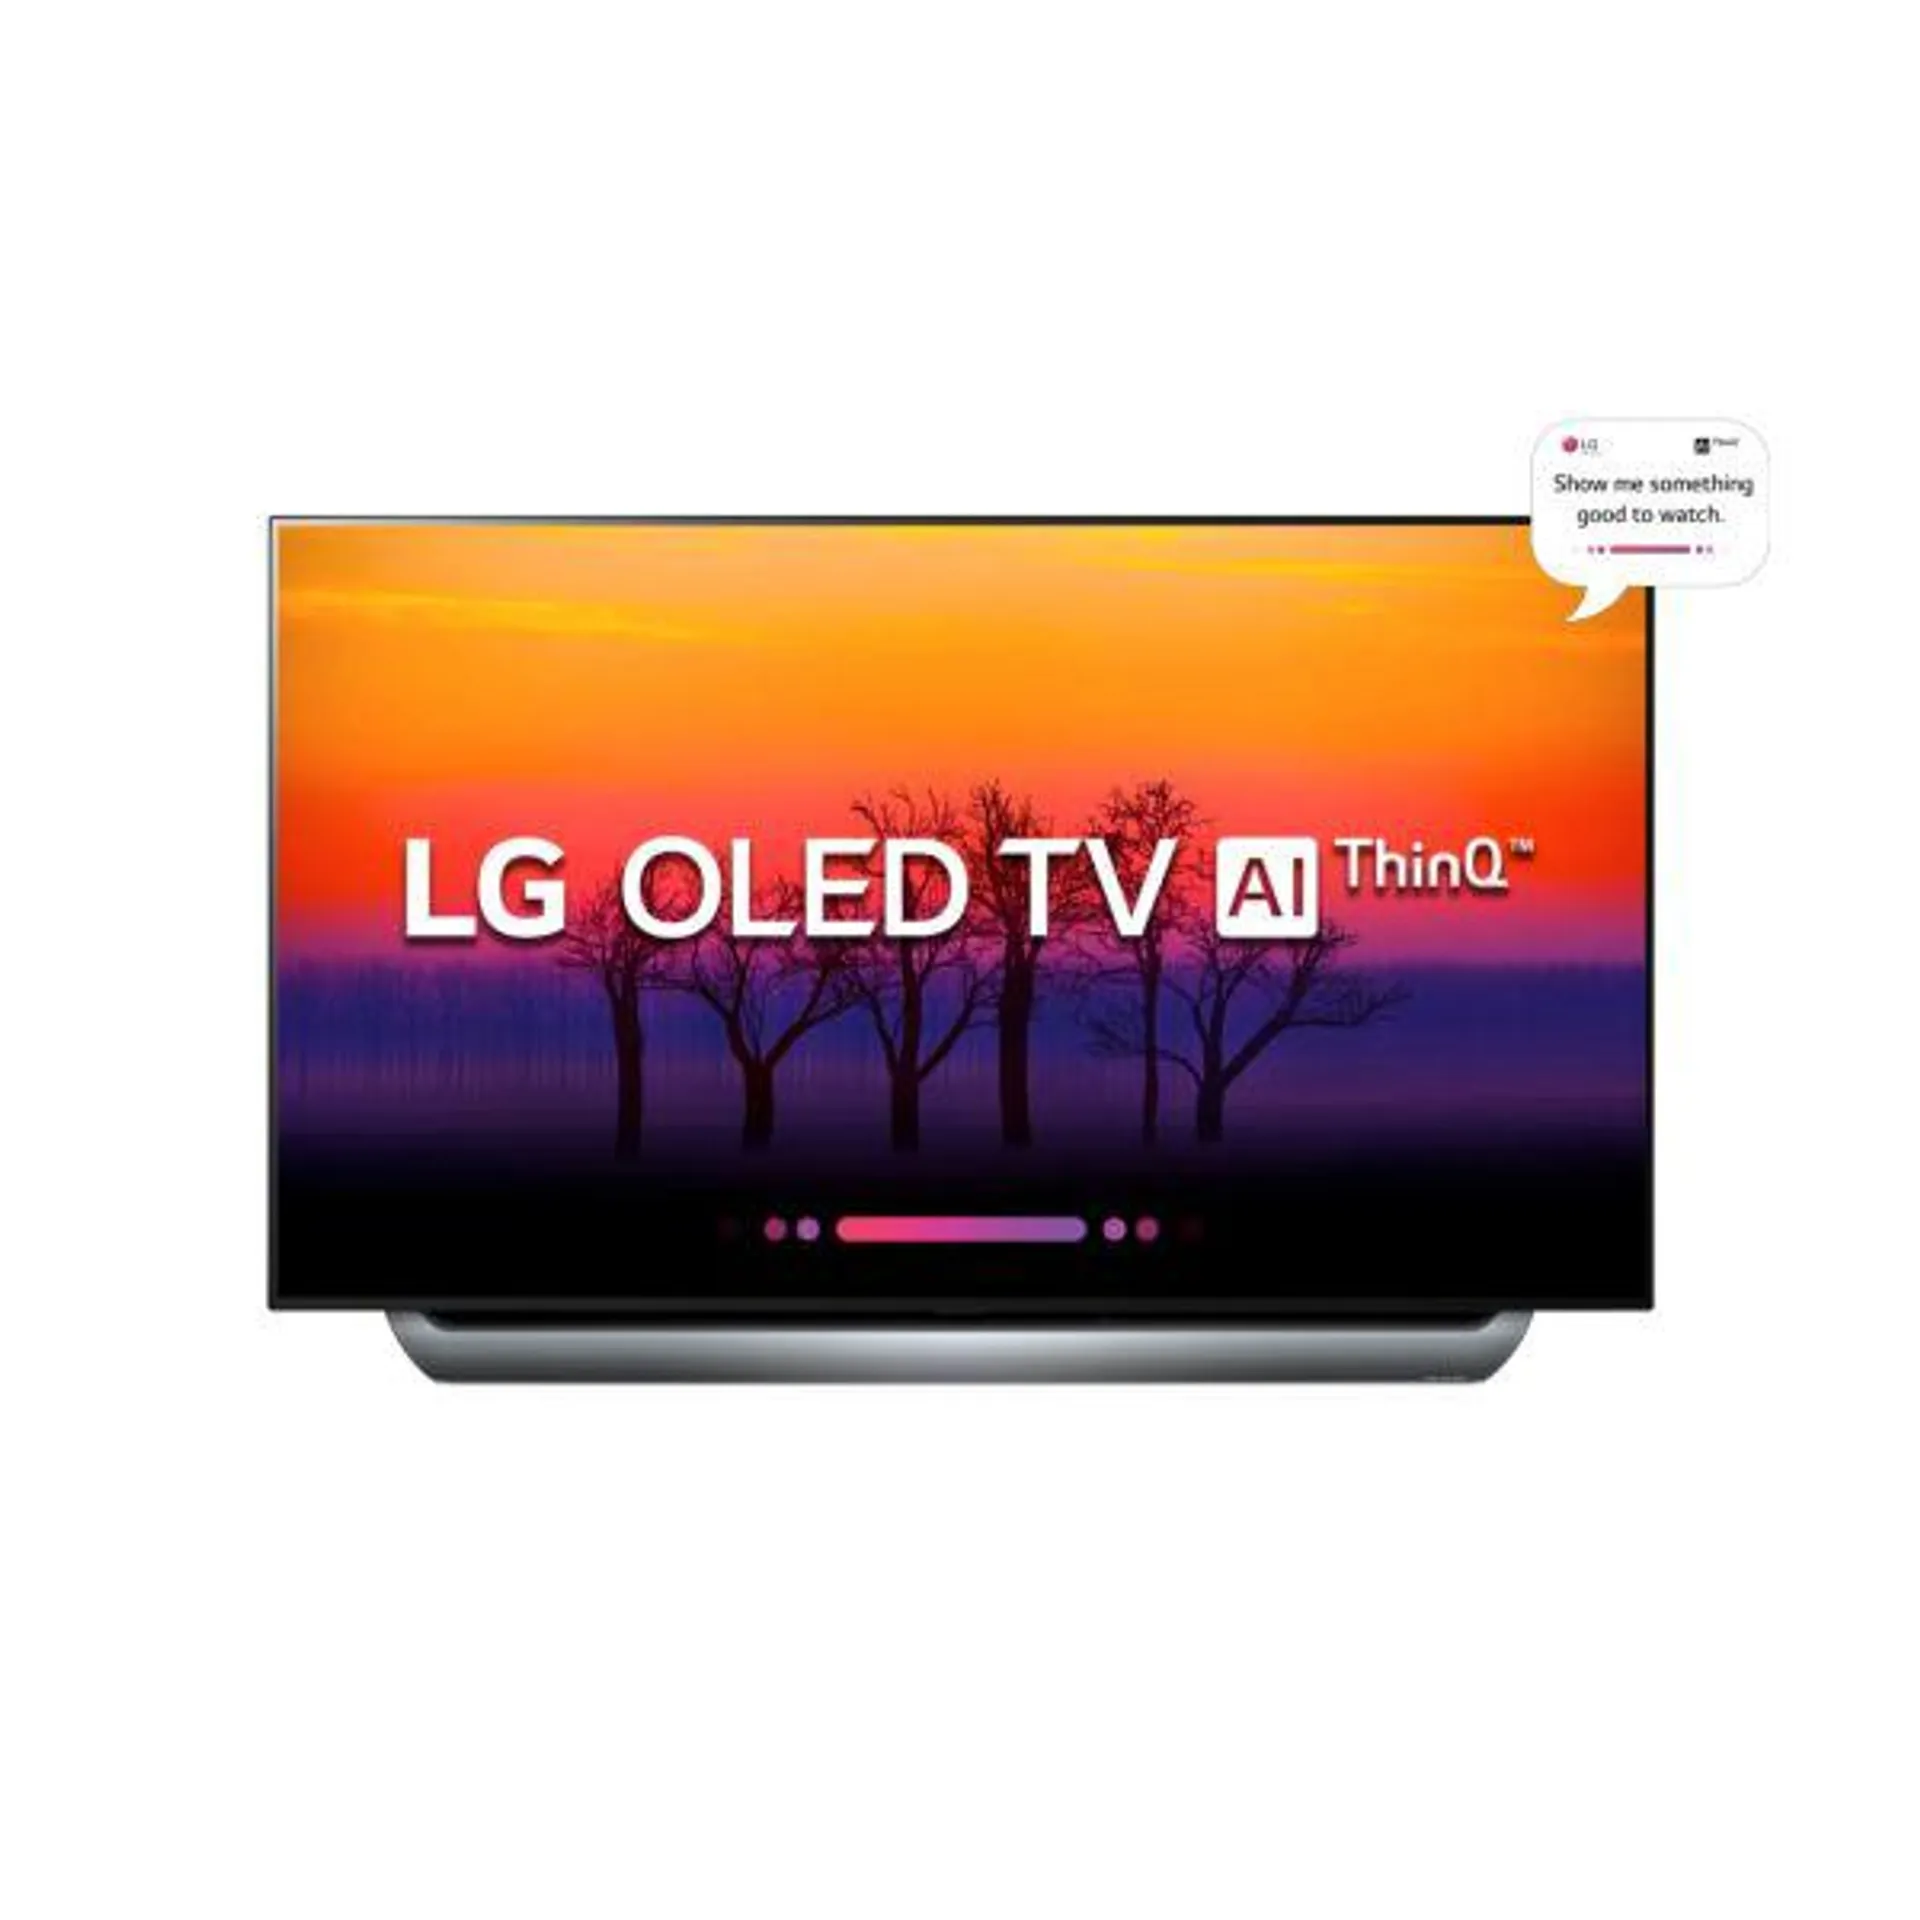 LG 55" C8 OLED 4K Smart TV - 2018 model - Worlds Best OLED